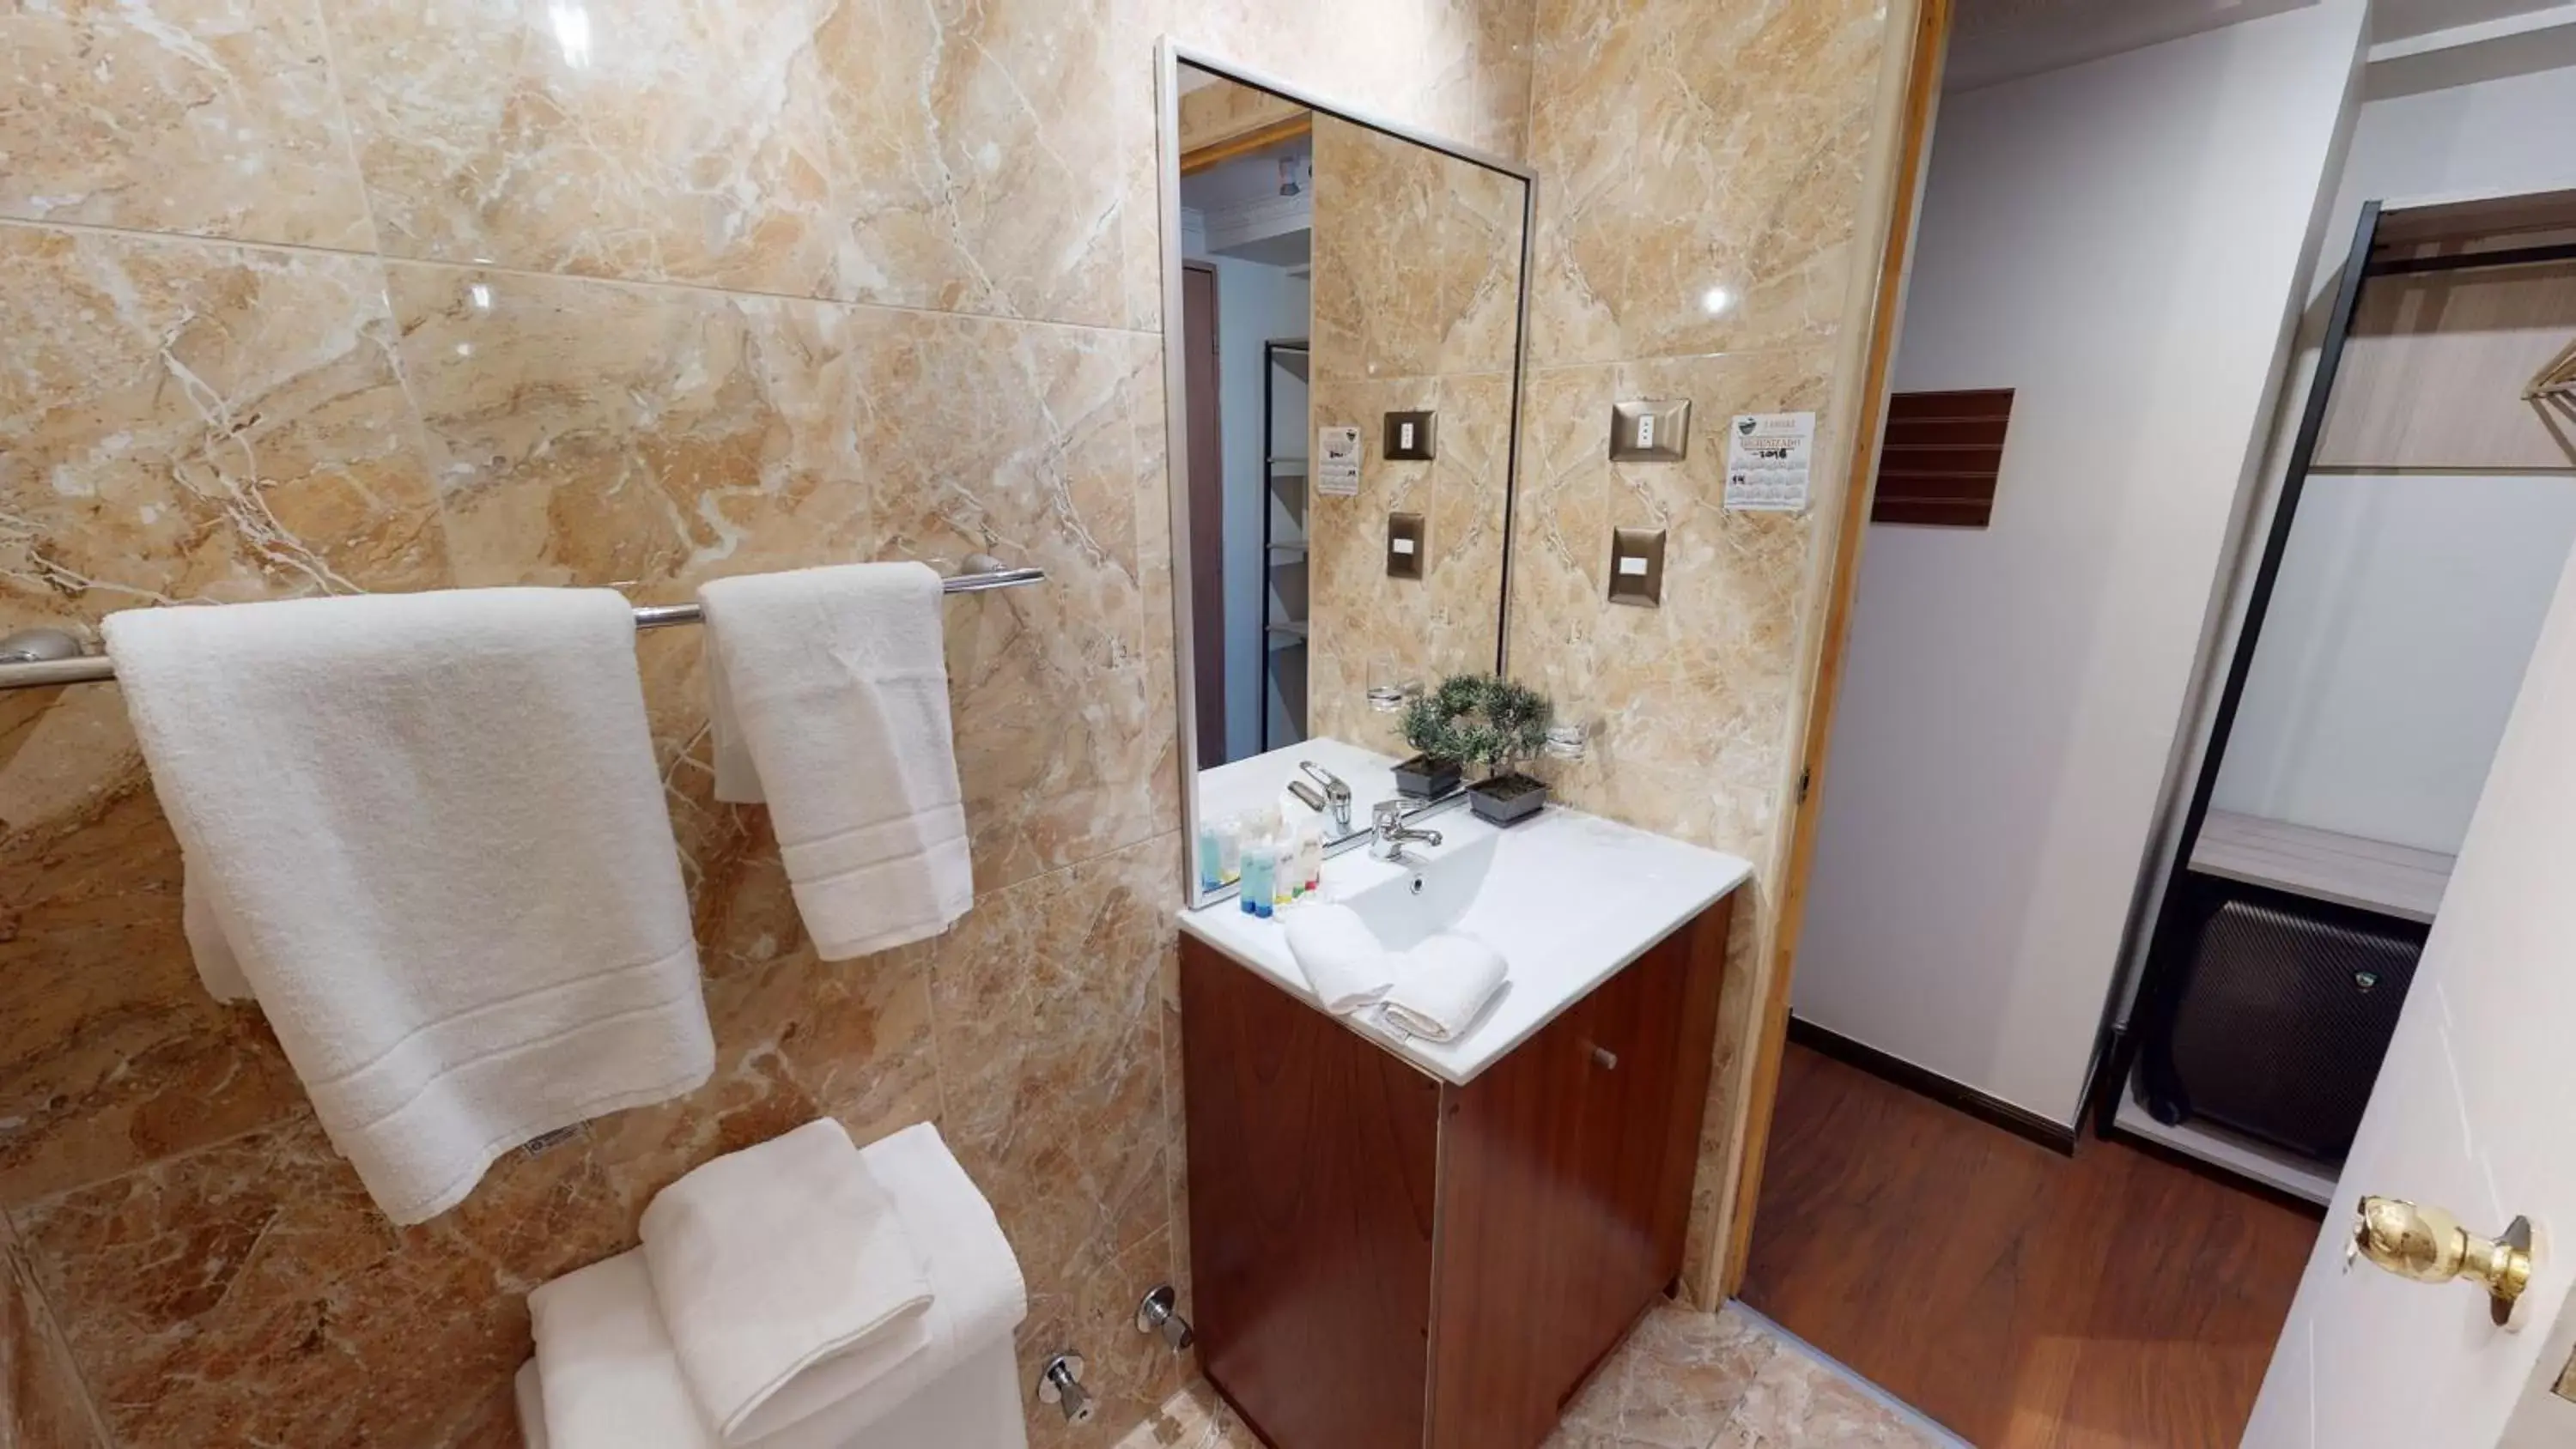 Toilet, Bathroom in Hotel Brasilia